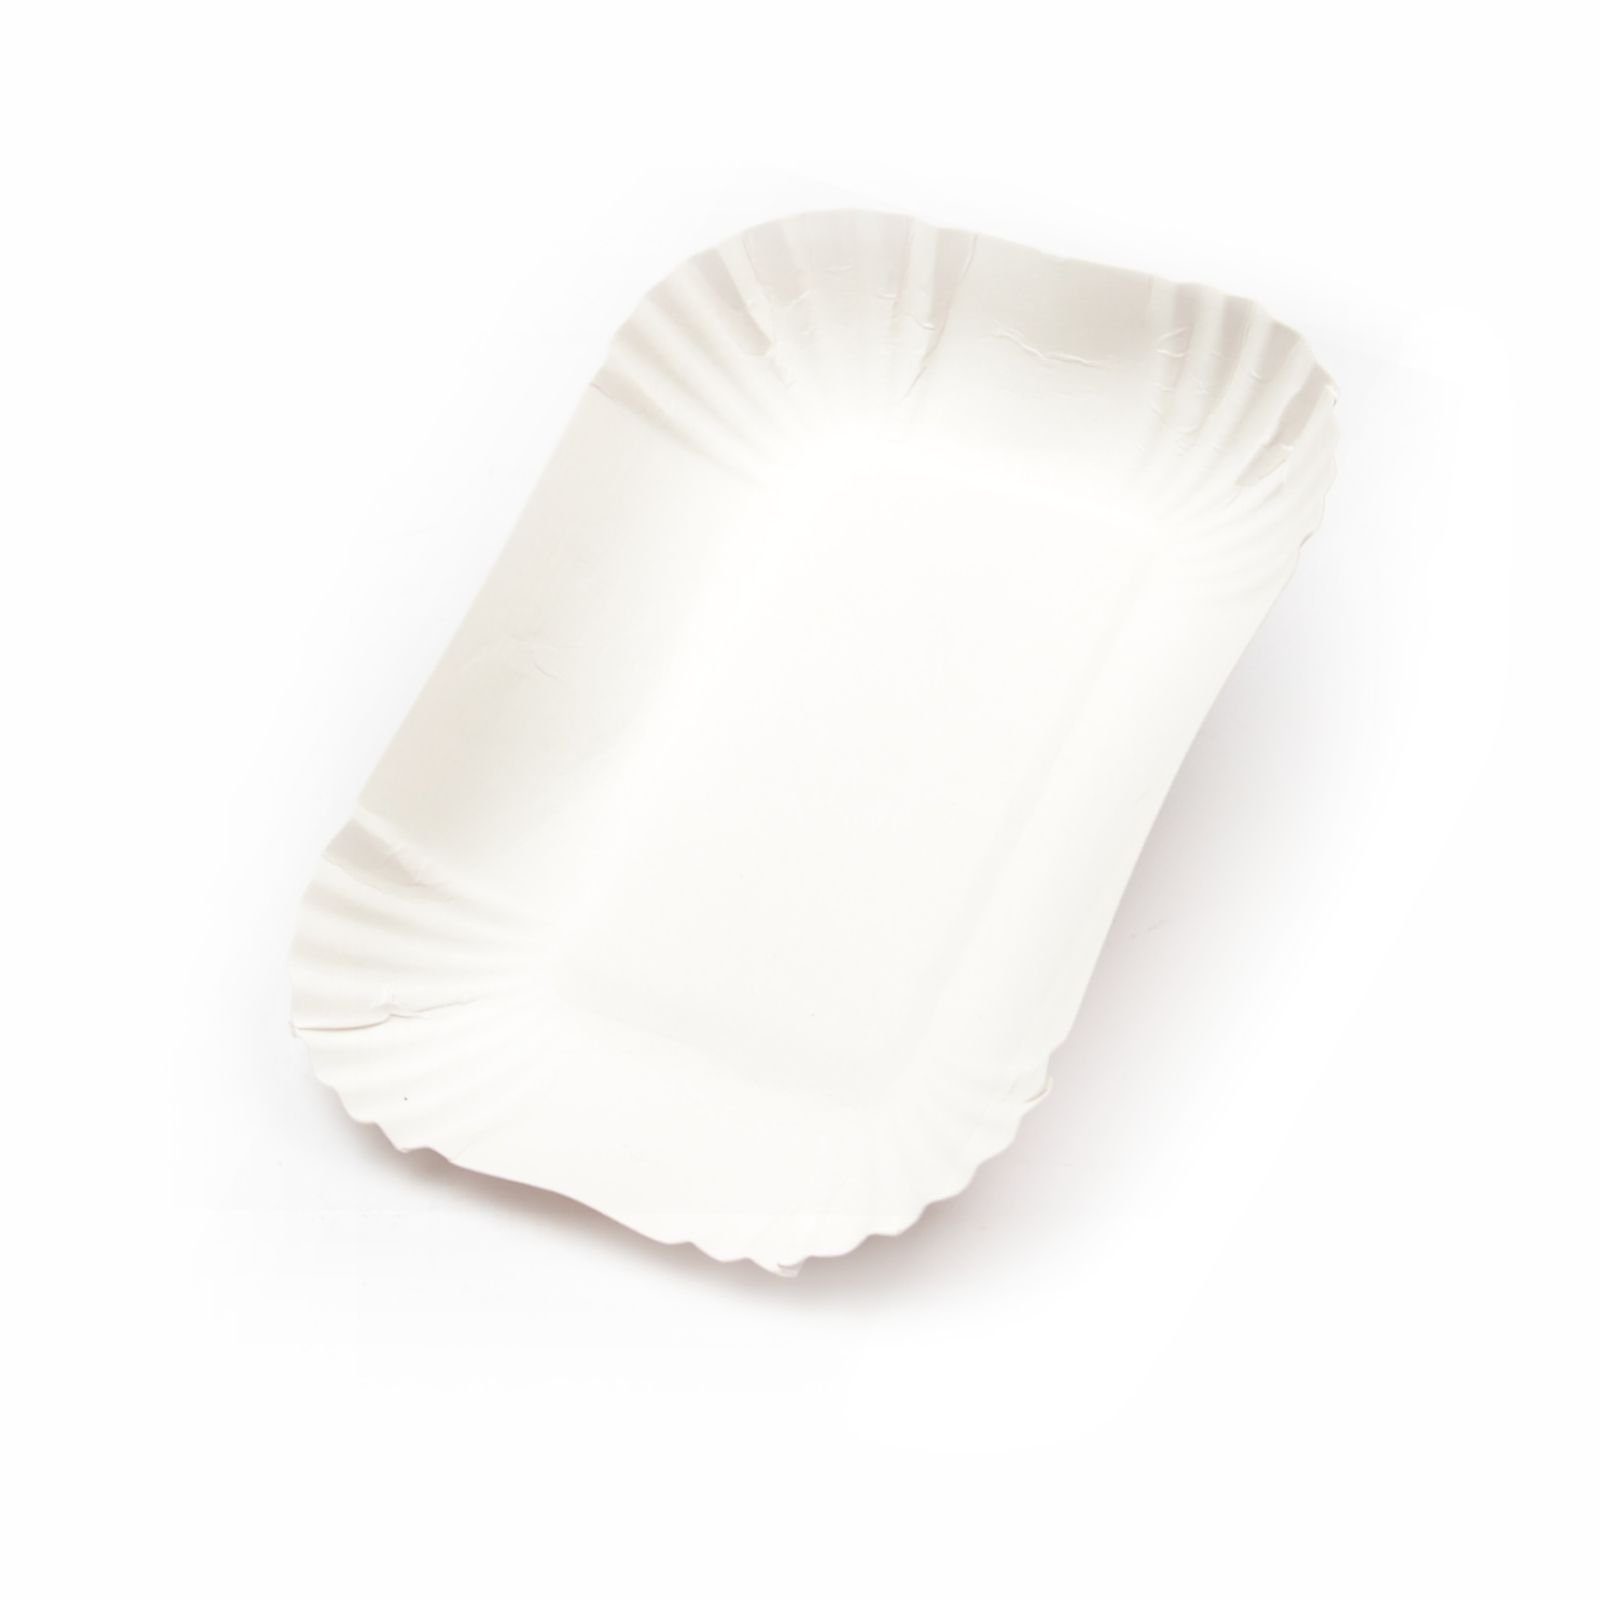 Einwegschale 1000 Stück Pappschalen KU41 (13×17,5×3 cm), ohne Beschichtung, weiß, Frischfaser Pommesschale Pappteller Currywurstschale Pommes-Schale